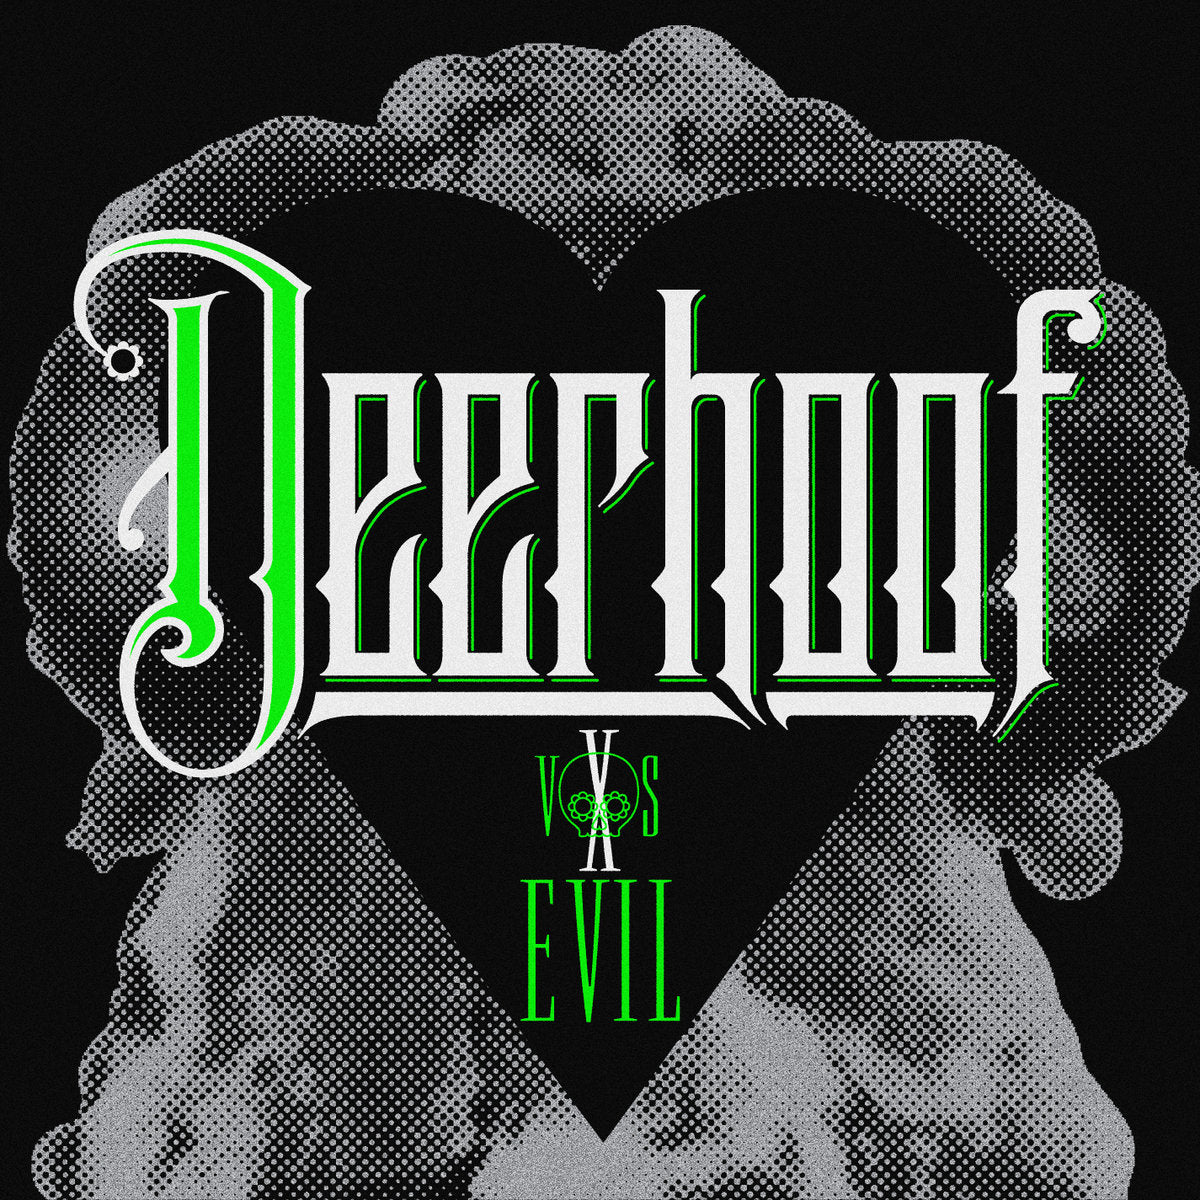 Deerhoof "Deerhoof Vs. Evil" LP (2011)